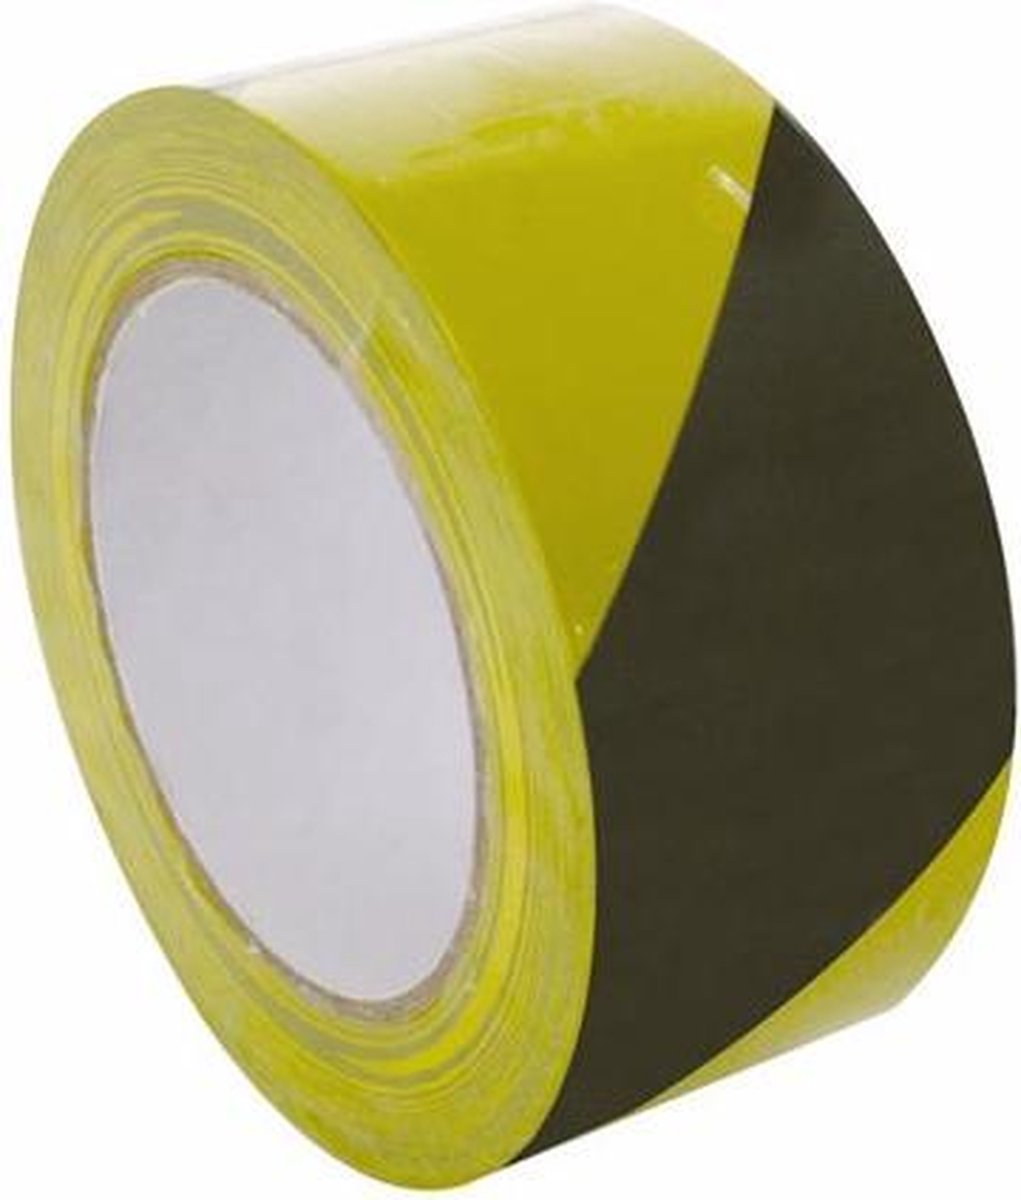 Markeertape - 50 mm x 33 m - geel/zwart | bol.com